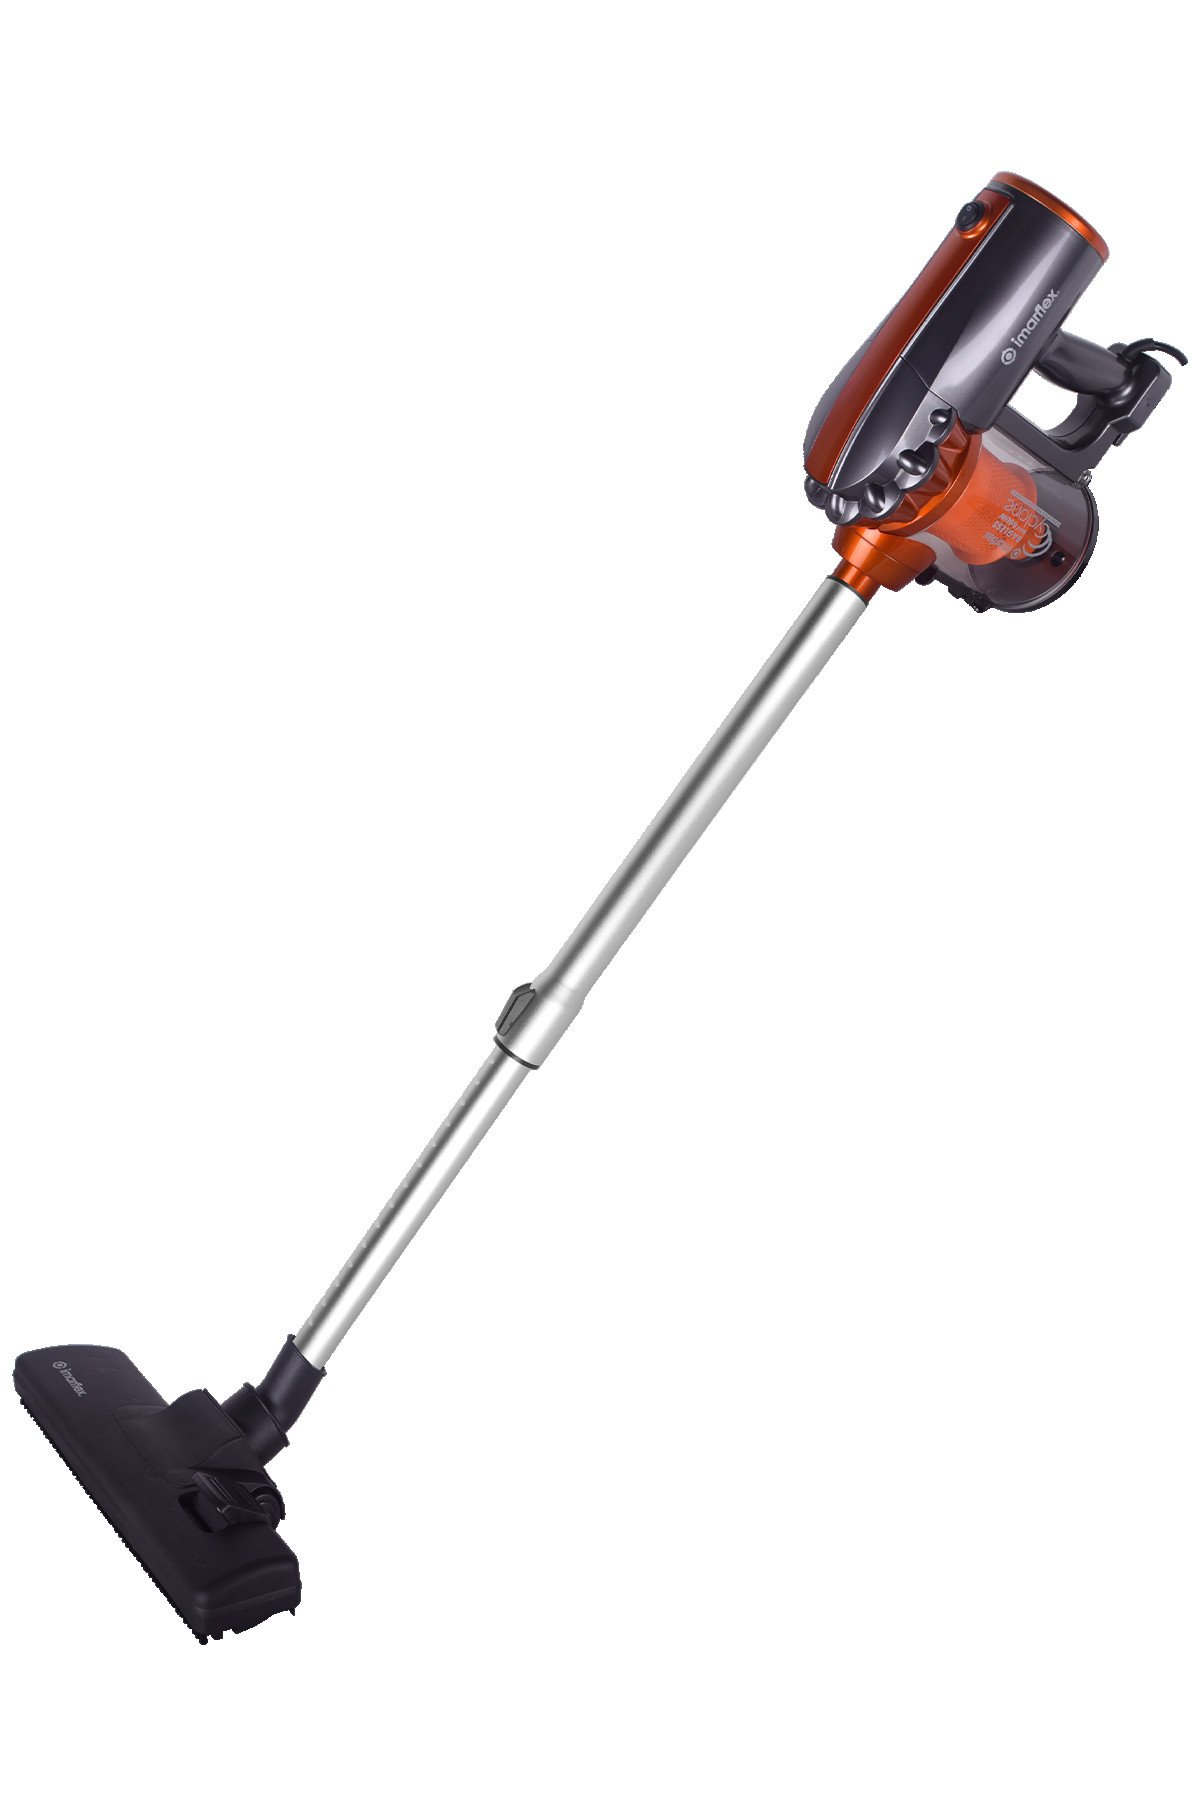 Imarflex Handheld Bagless Vacuum Cleaner IV-550Bv